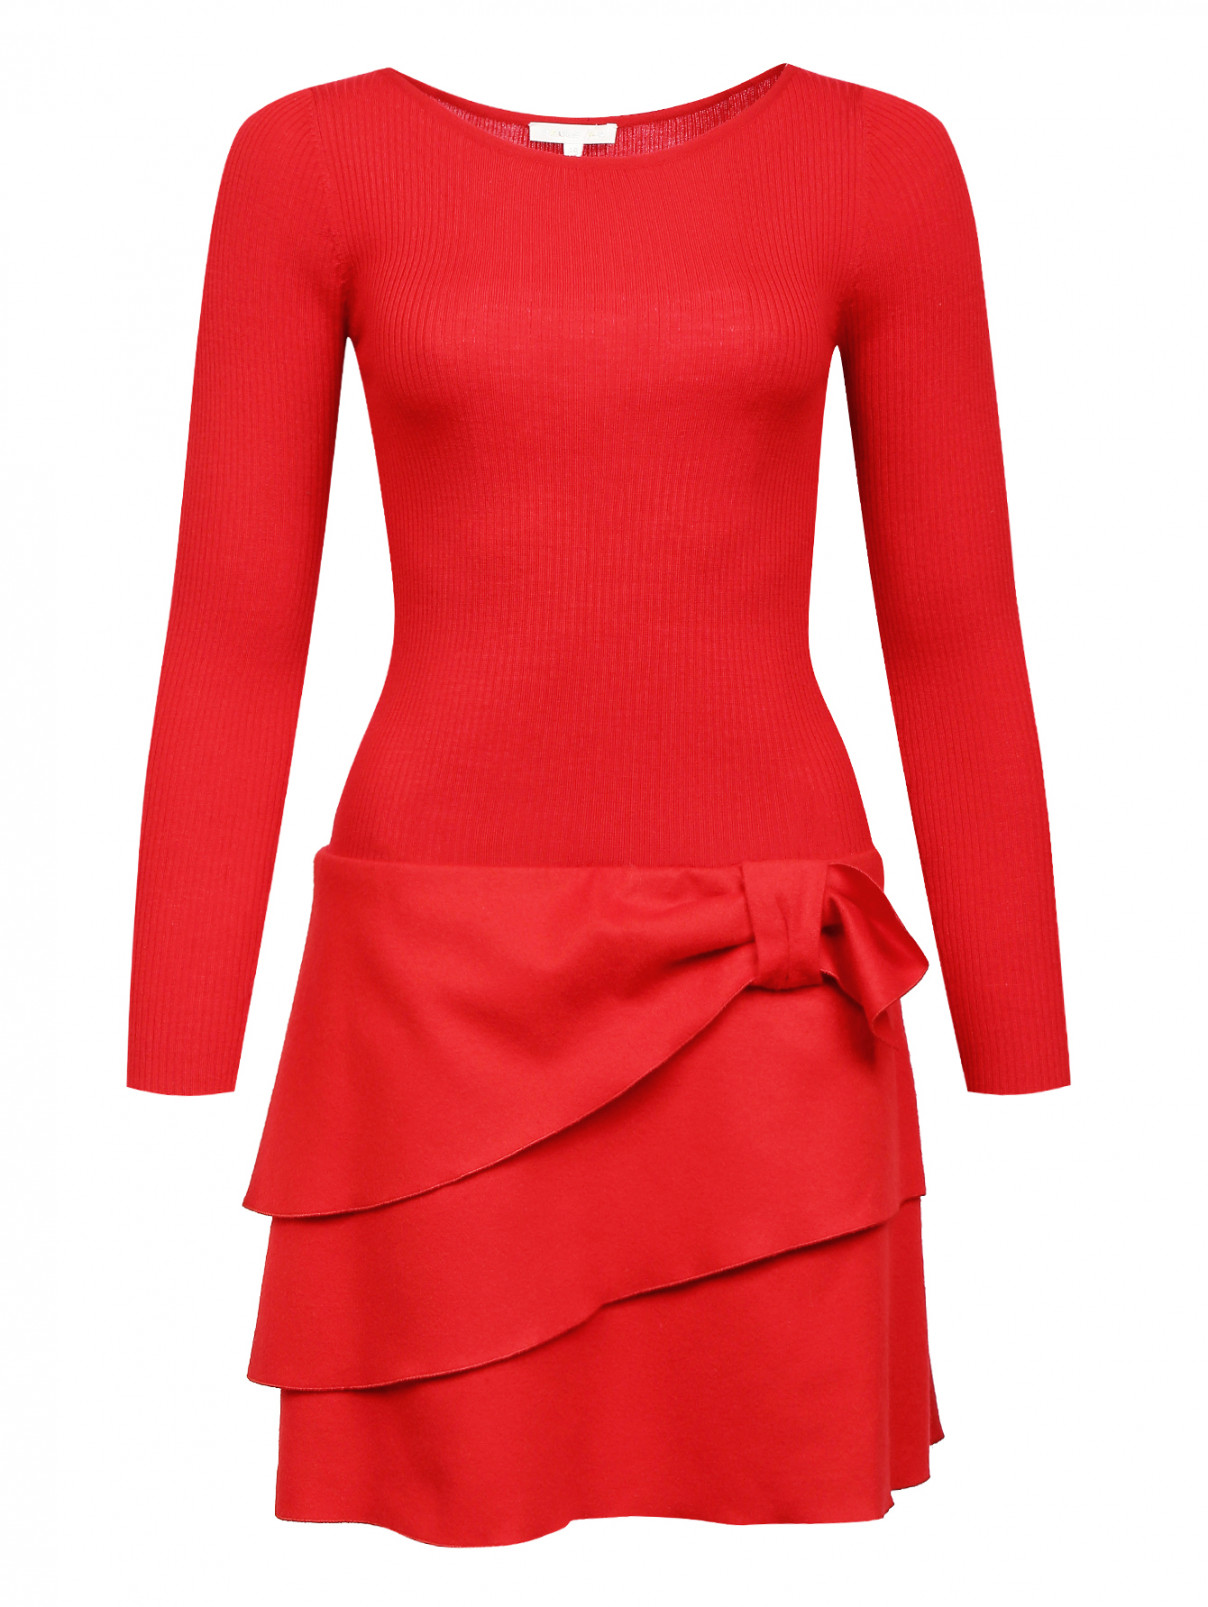 Трикотажное платье-мини из шерсти с бантом Paule Ka  –  Общий вид  – Цвет:  Красный